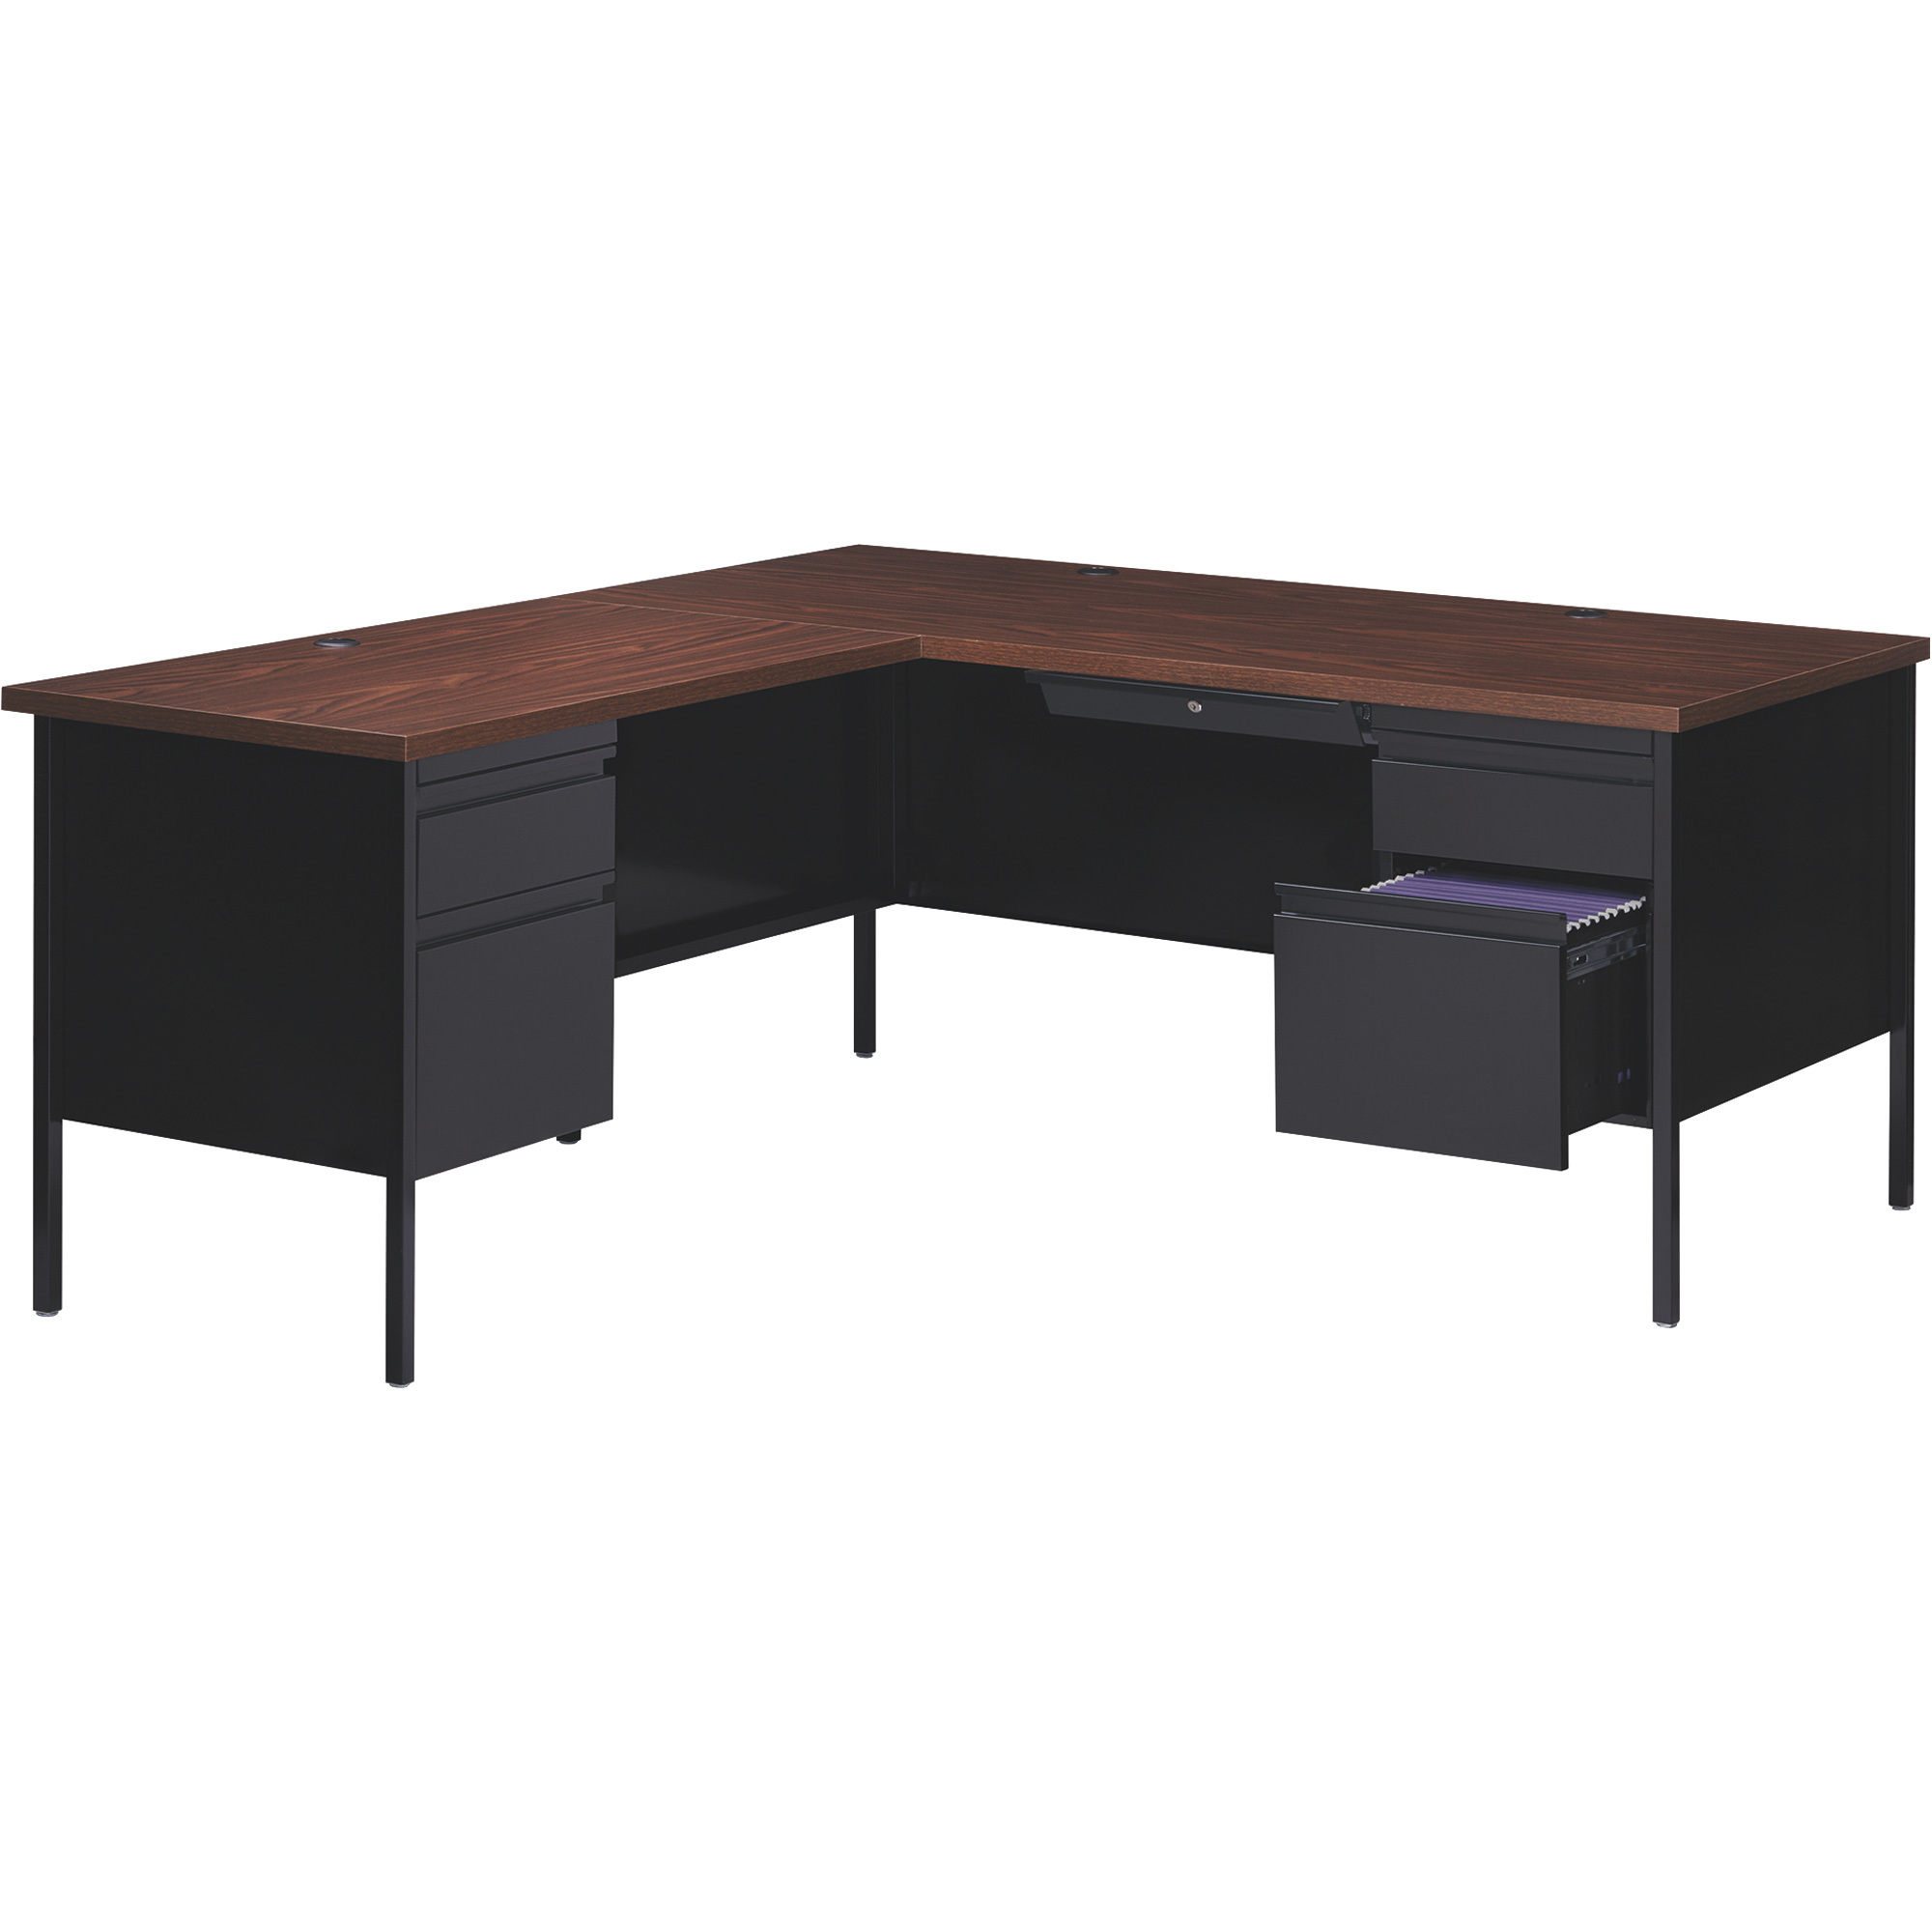 Hirsh Industries Left-Hand L-Shape Desk â Black/Walnut, 66Inch W x 72Inch D x 29 1/2Inch H, Model 20108